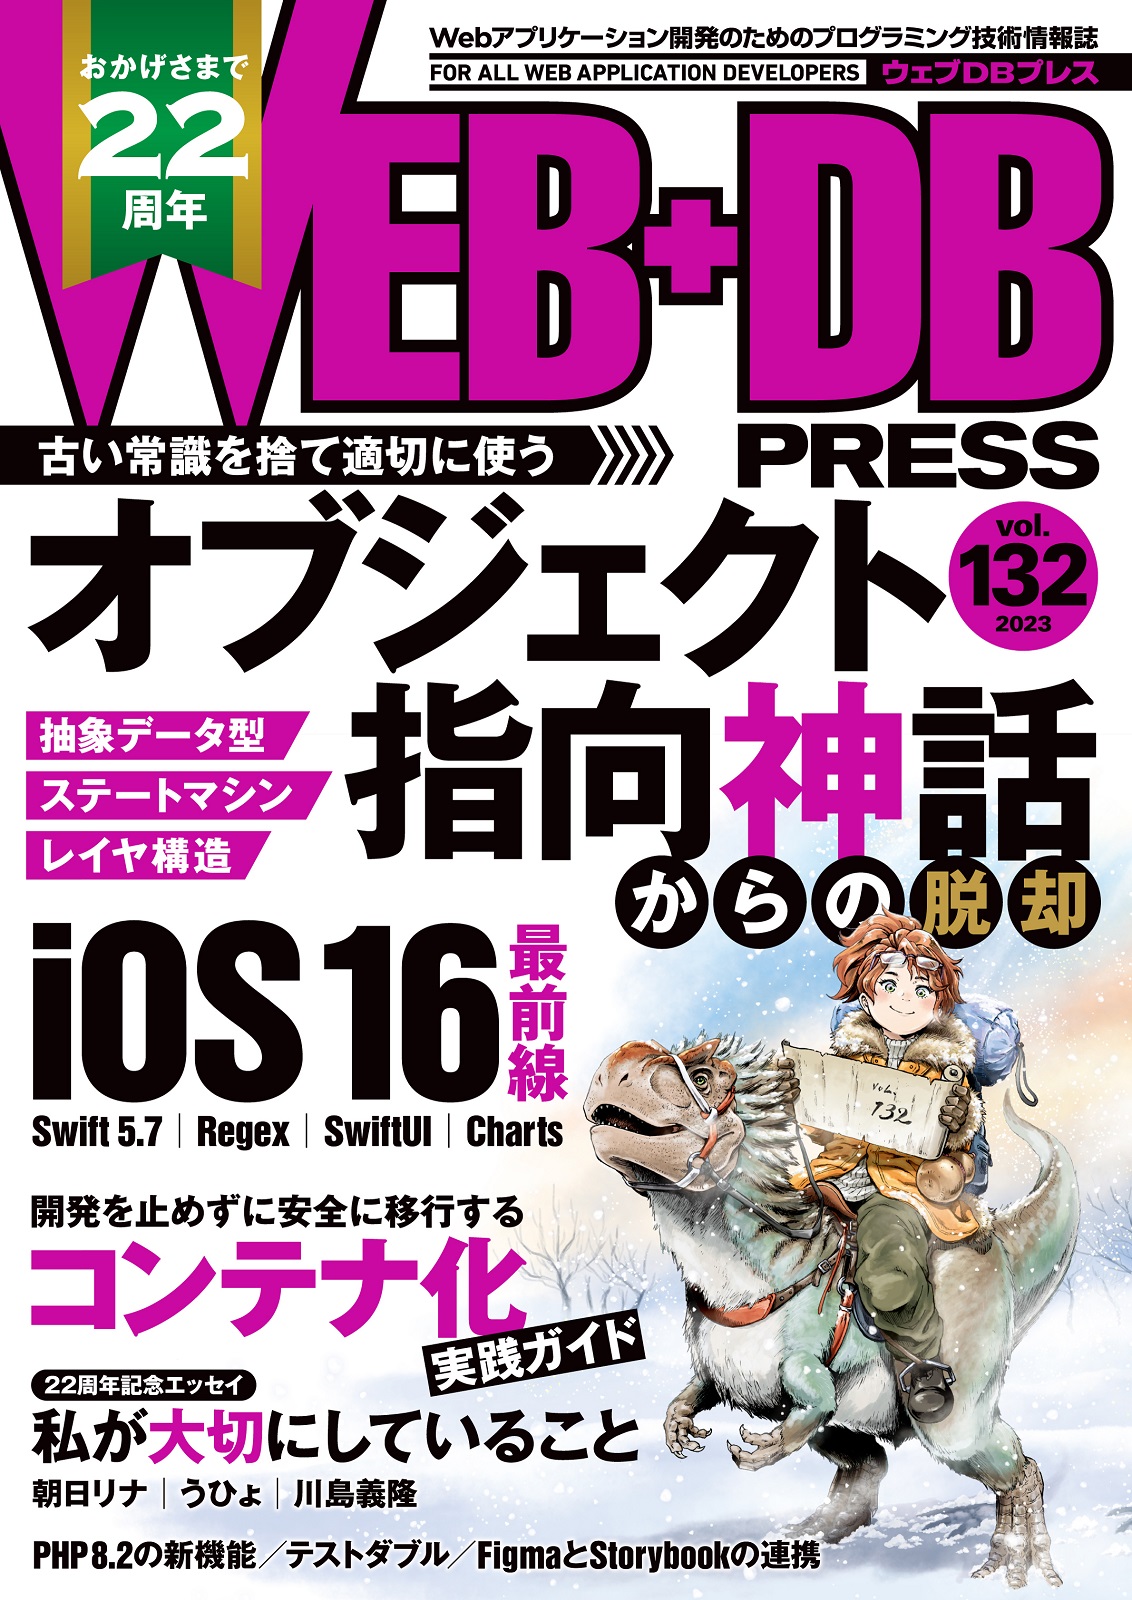 WEB+DB PRESS Vol.132